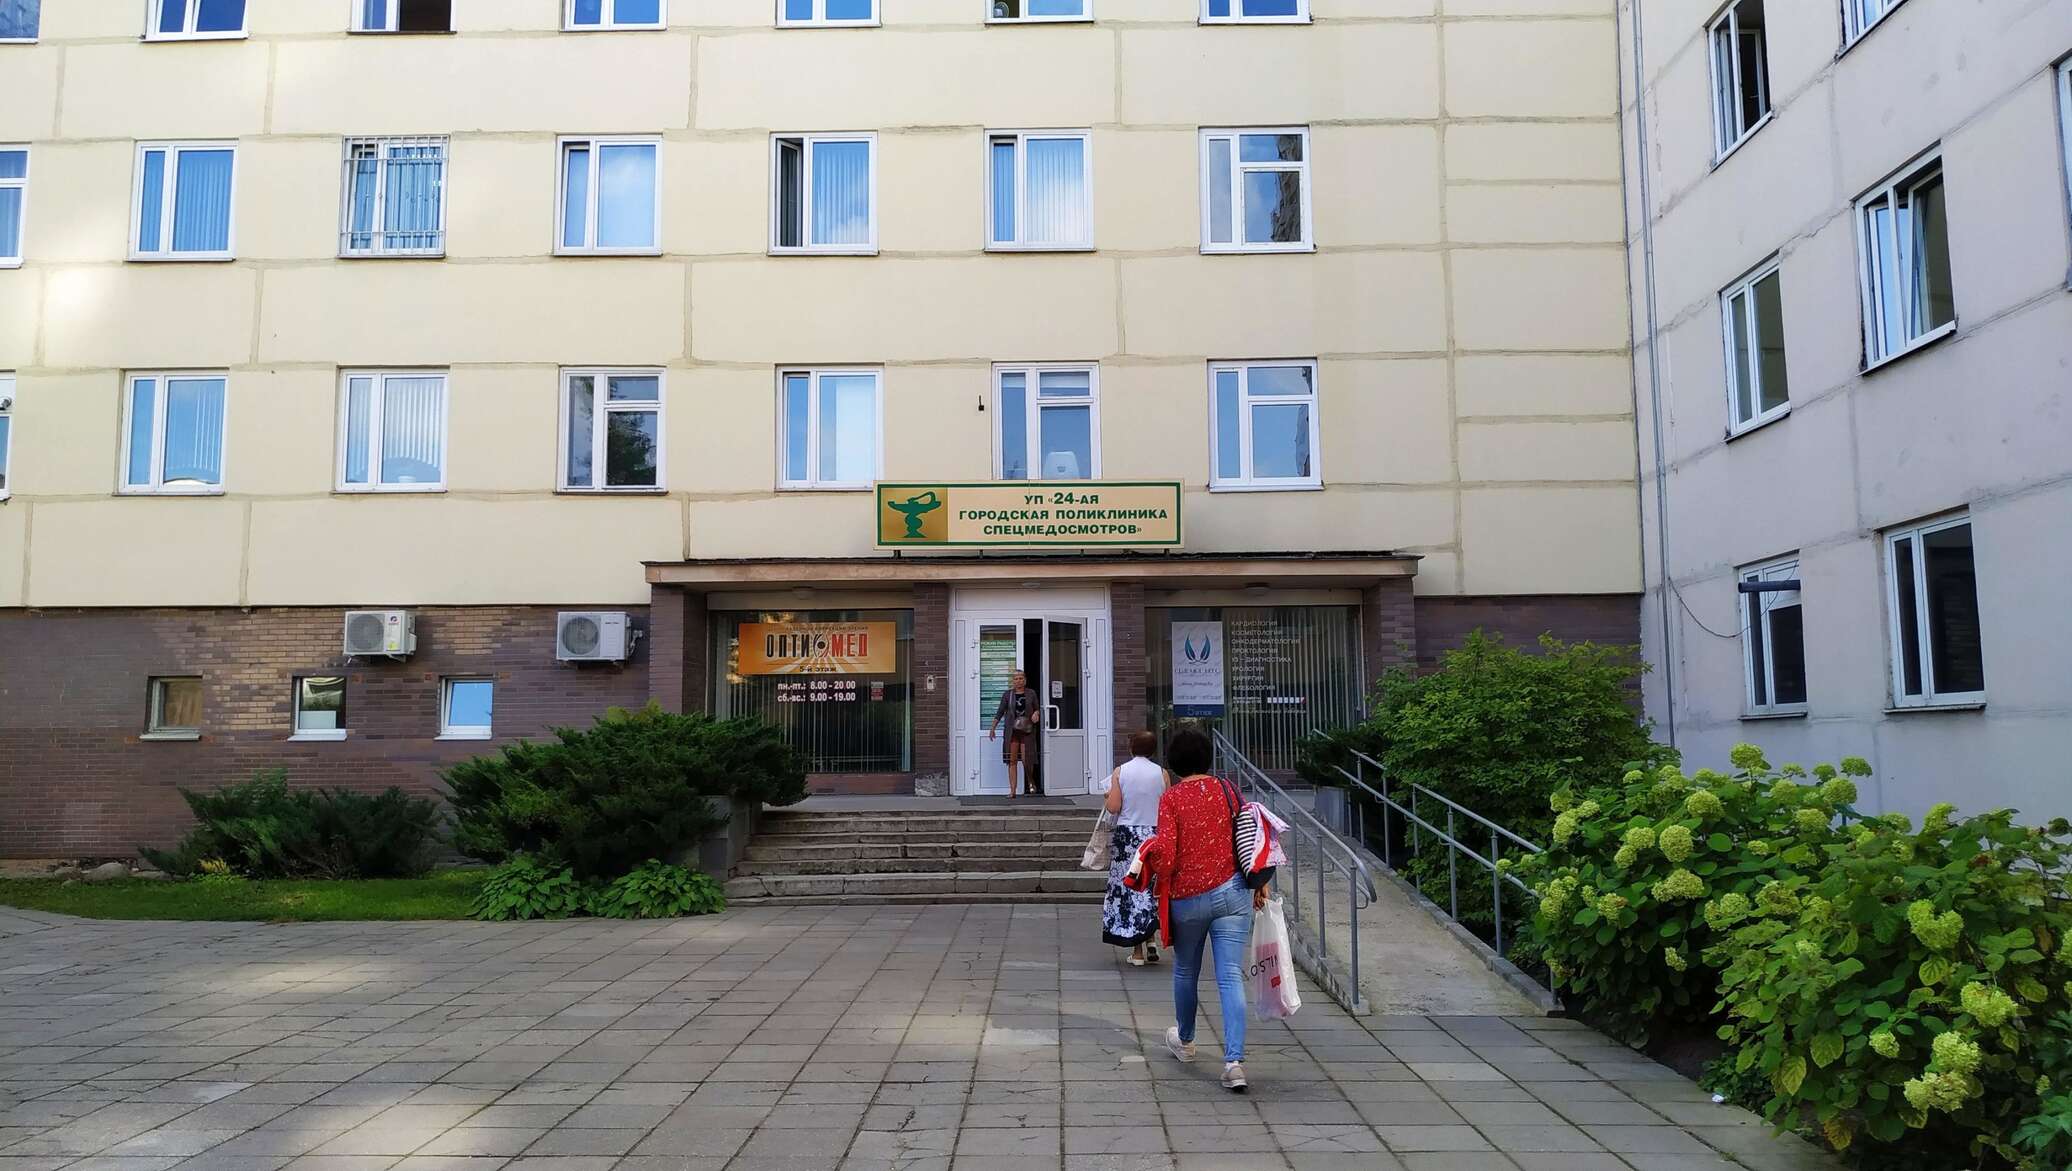 24 Поликлиника Минск